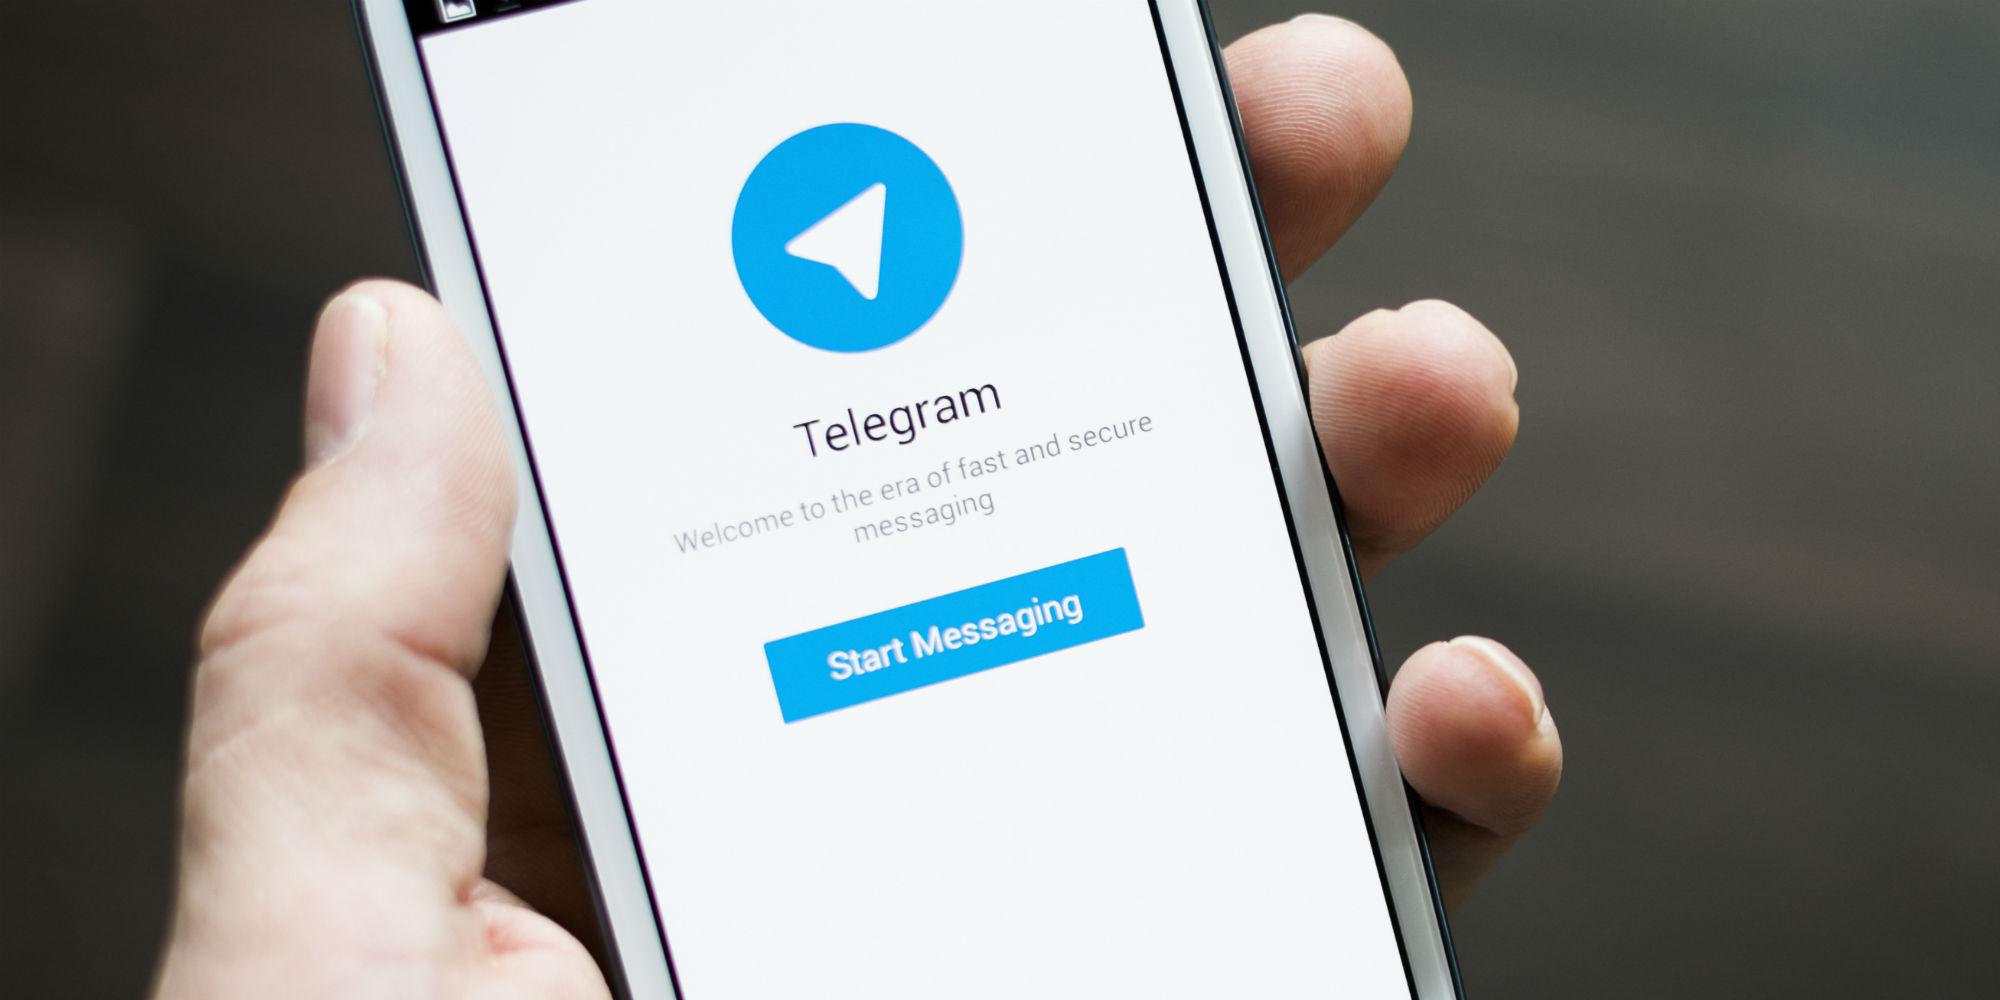 [BugBounty] Раскрытие 5 миллионов ссылок в приватные чаты Telegram и возможность редактирования любой статьи telegra.ph - 1